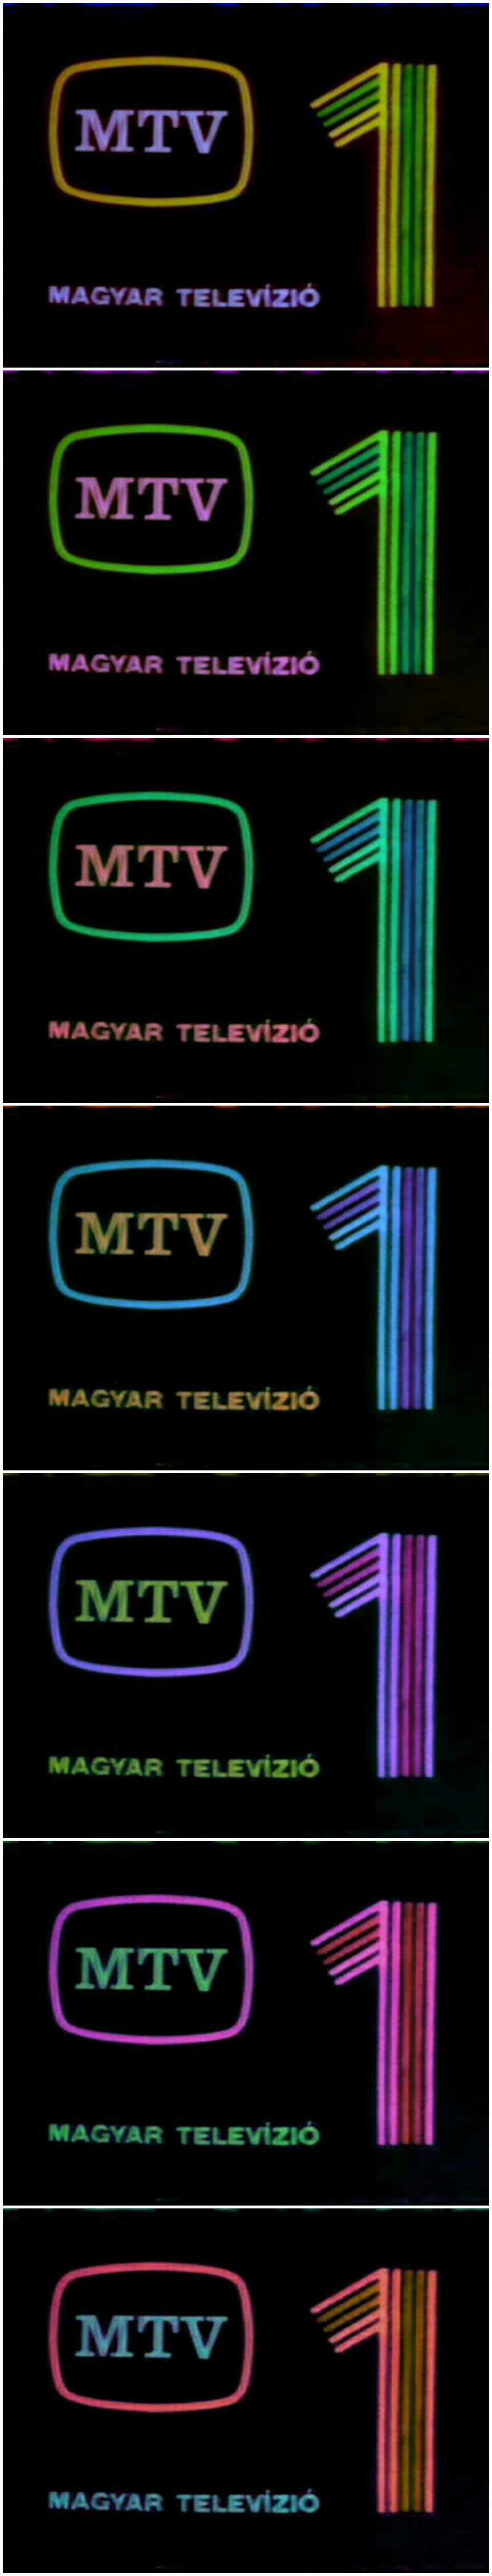 MTV 1 logo color variation #02